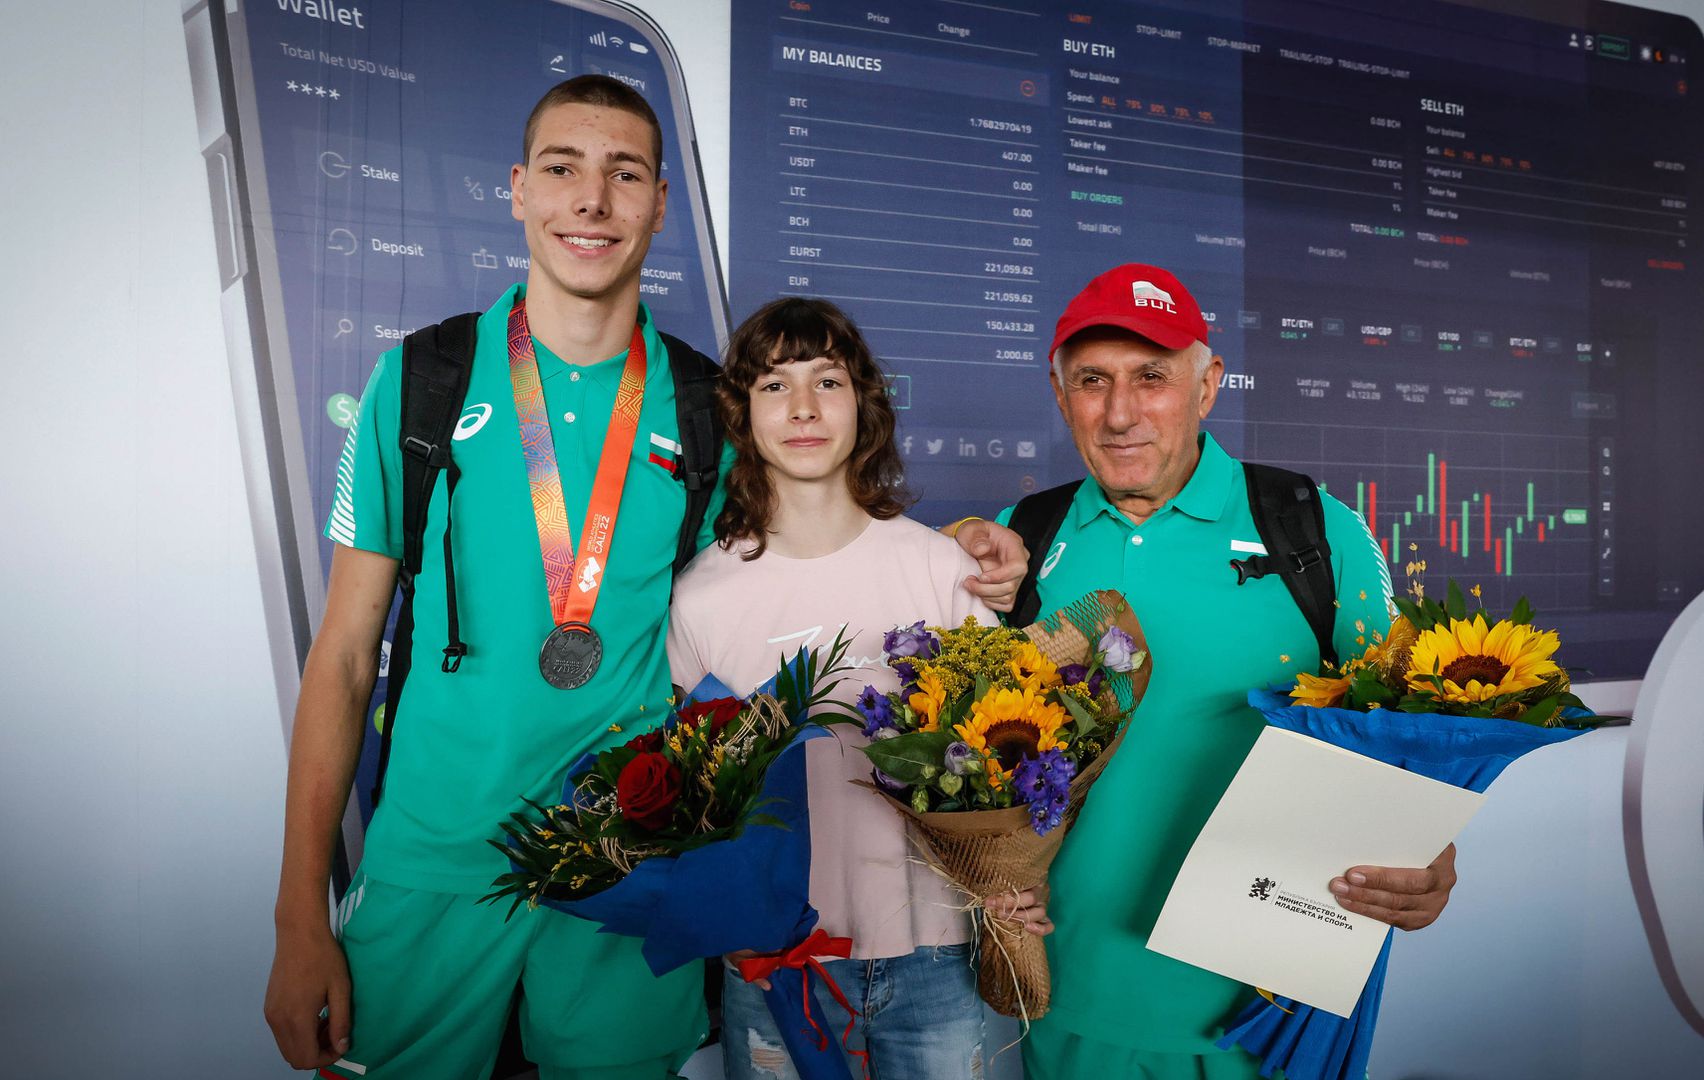  Световните медалисти Пламена Миткова и Божидар Саръбоюков се завърнаха в България 